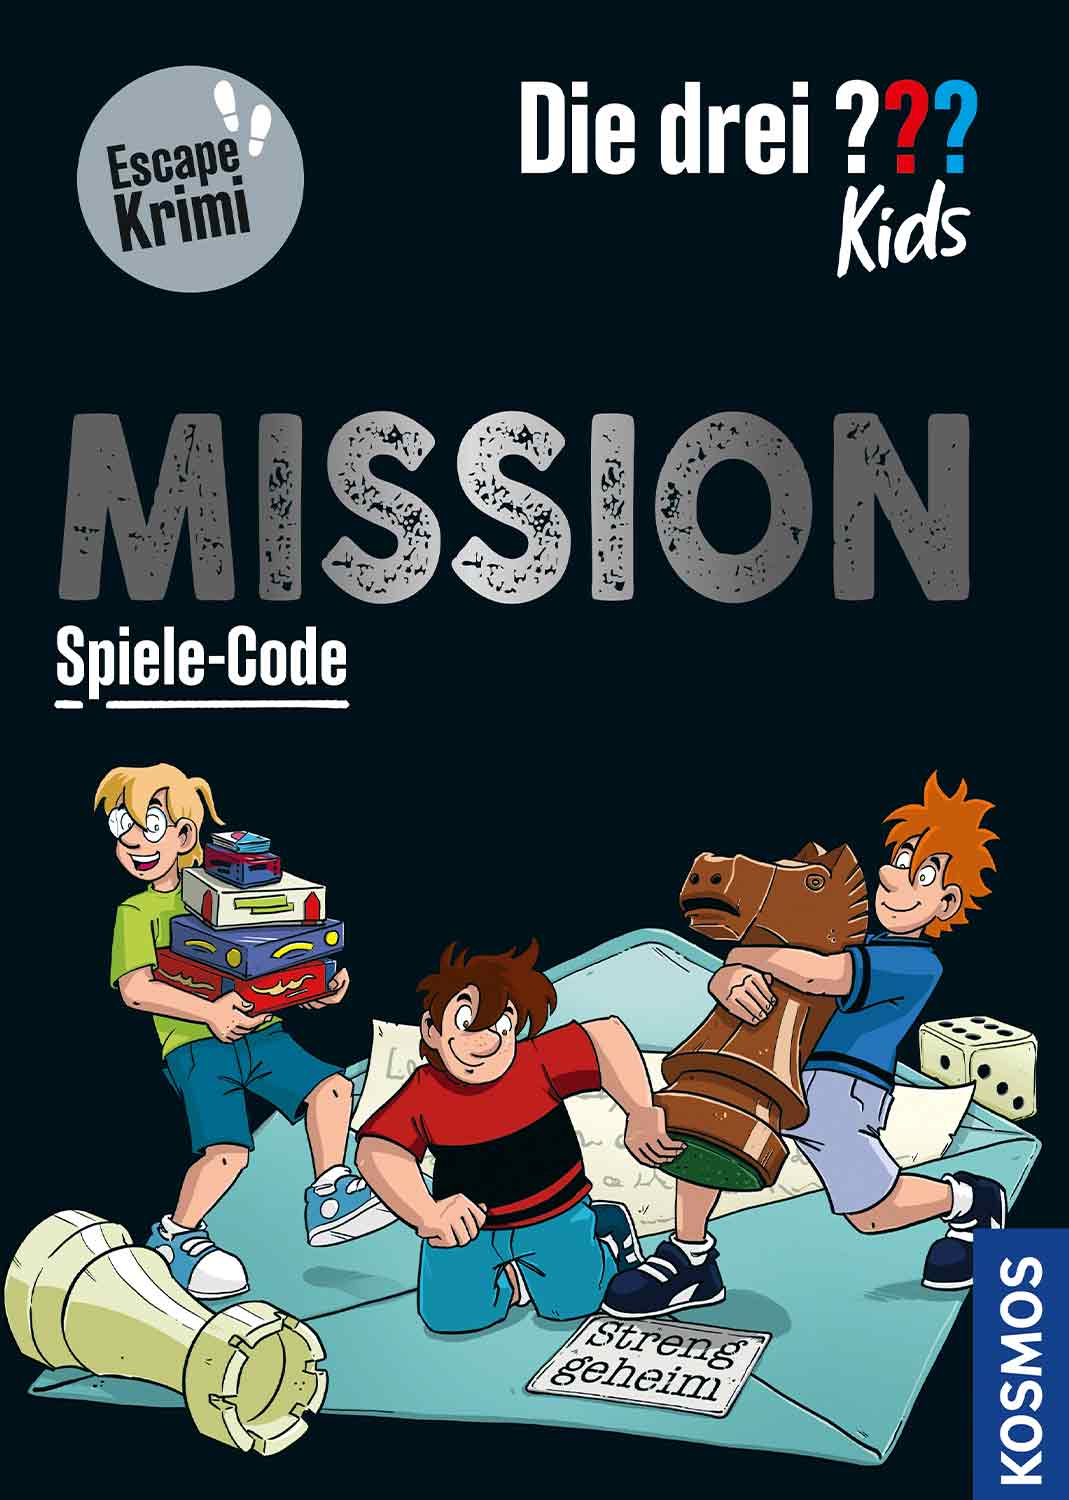 Die drei ??? Kids - Mission (Spiele-Code)